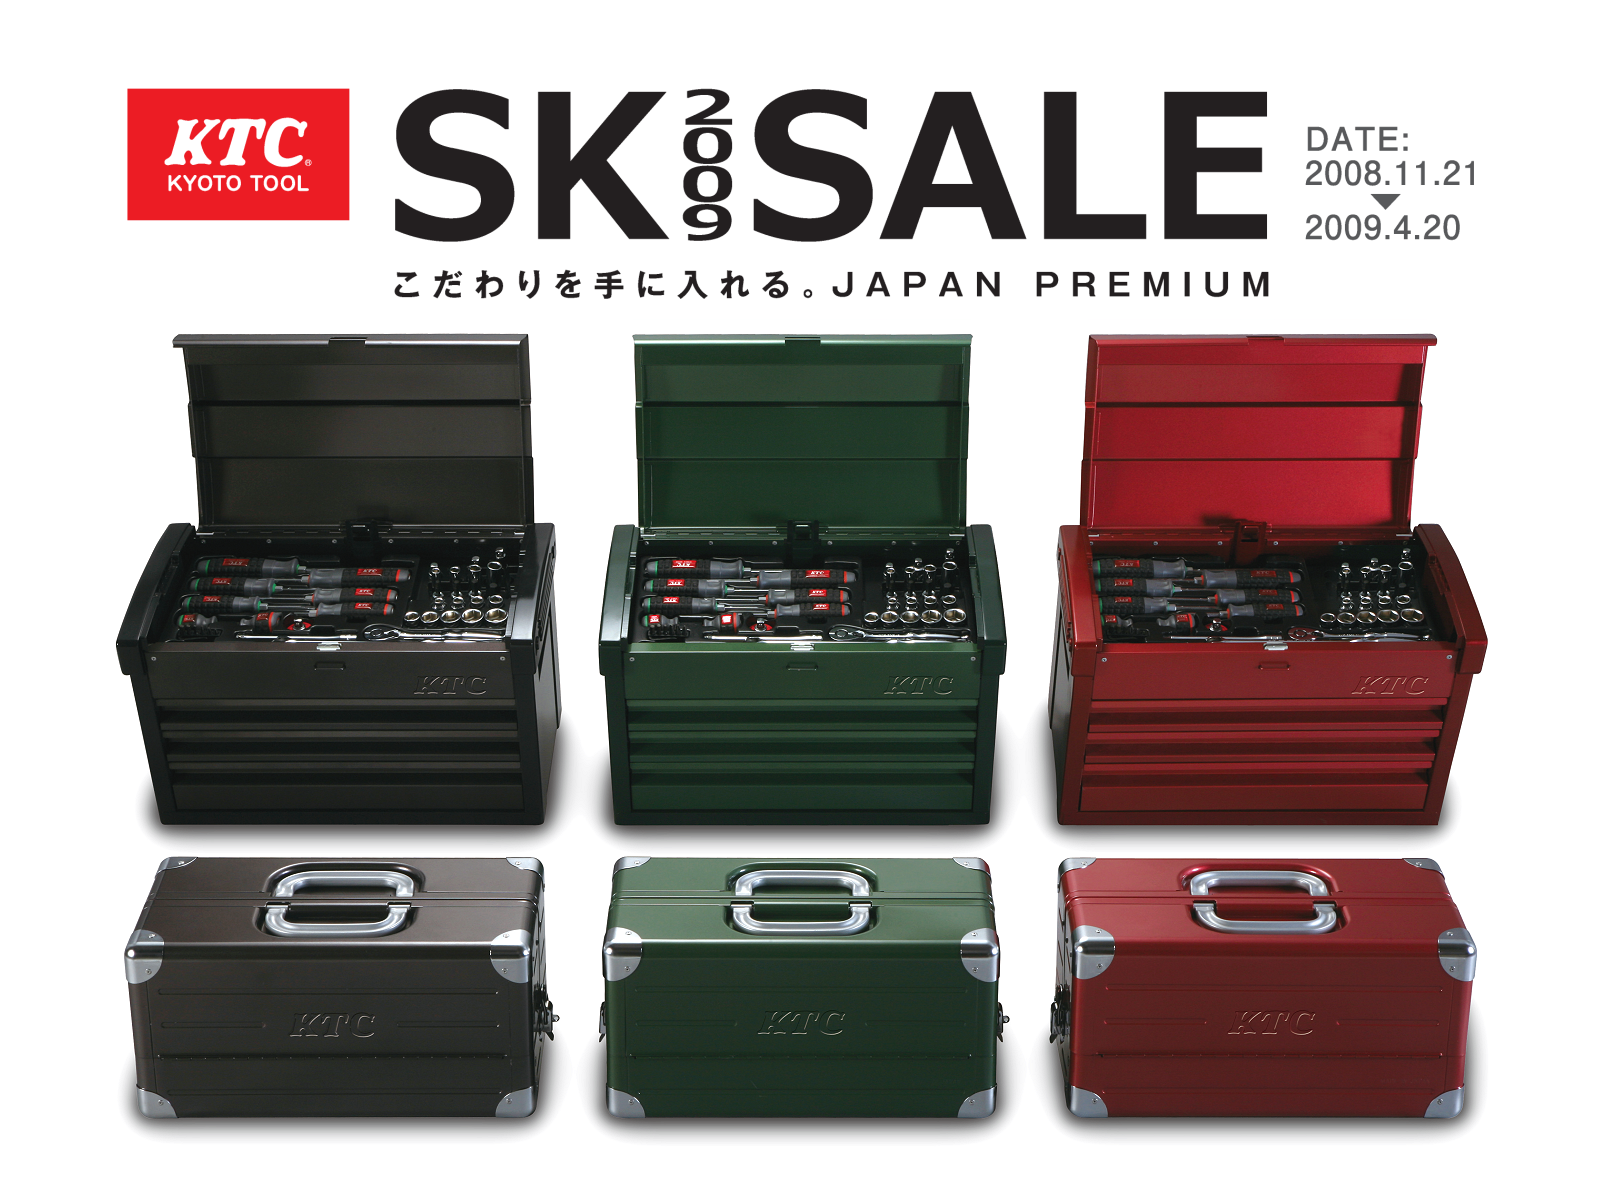 工具セットがお買得価格で購入できる 「2009SKセール」のご案内 | KTCツールオフィシャルサイト